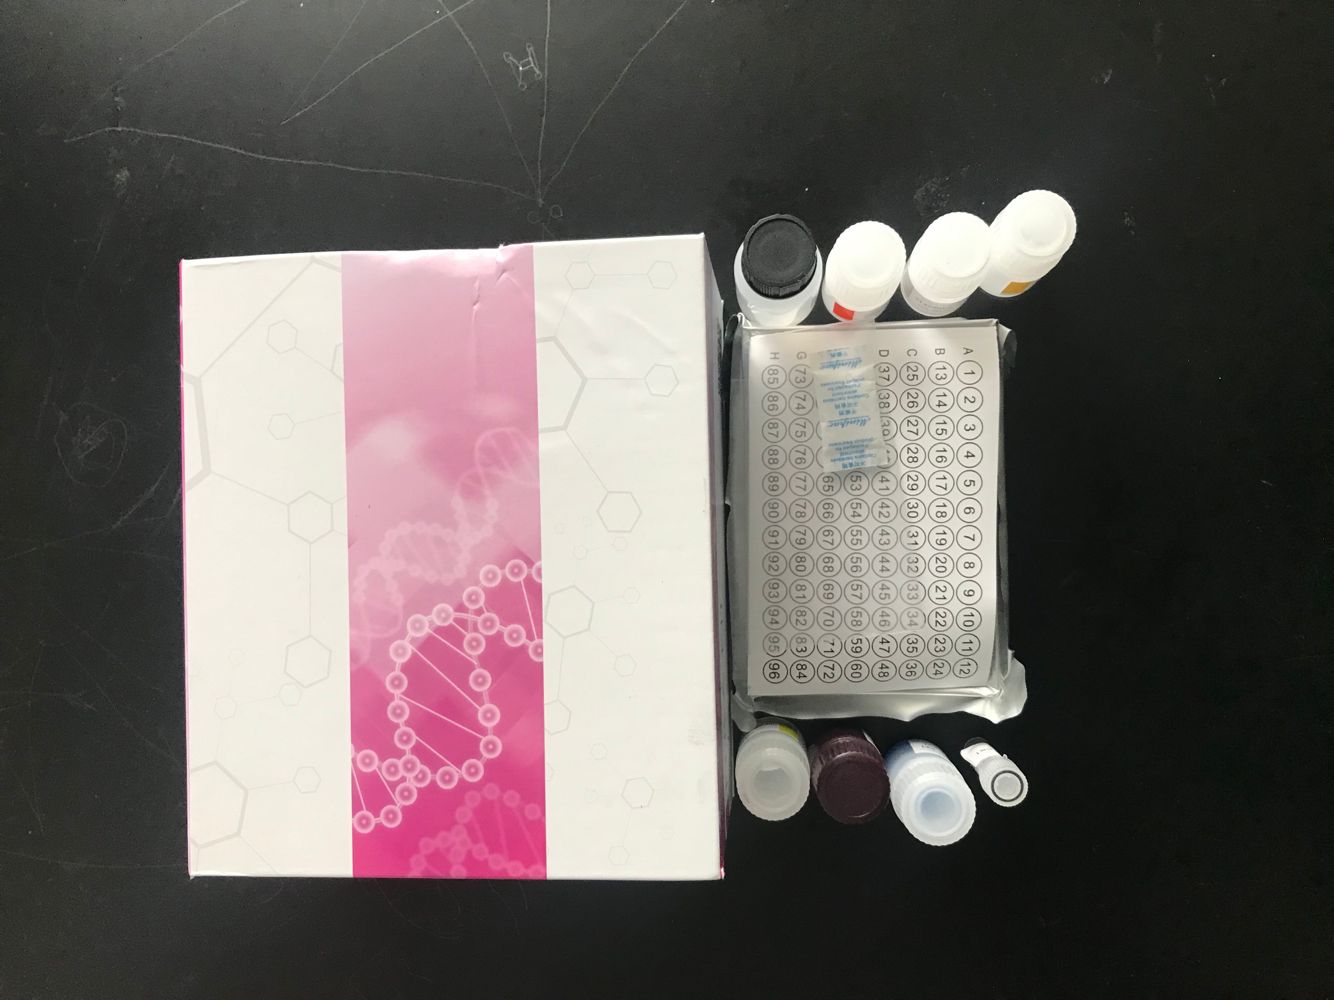 微囊藻毒素检测试剂盒进口试剂